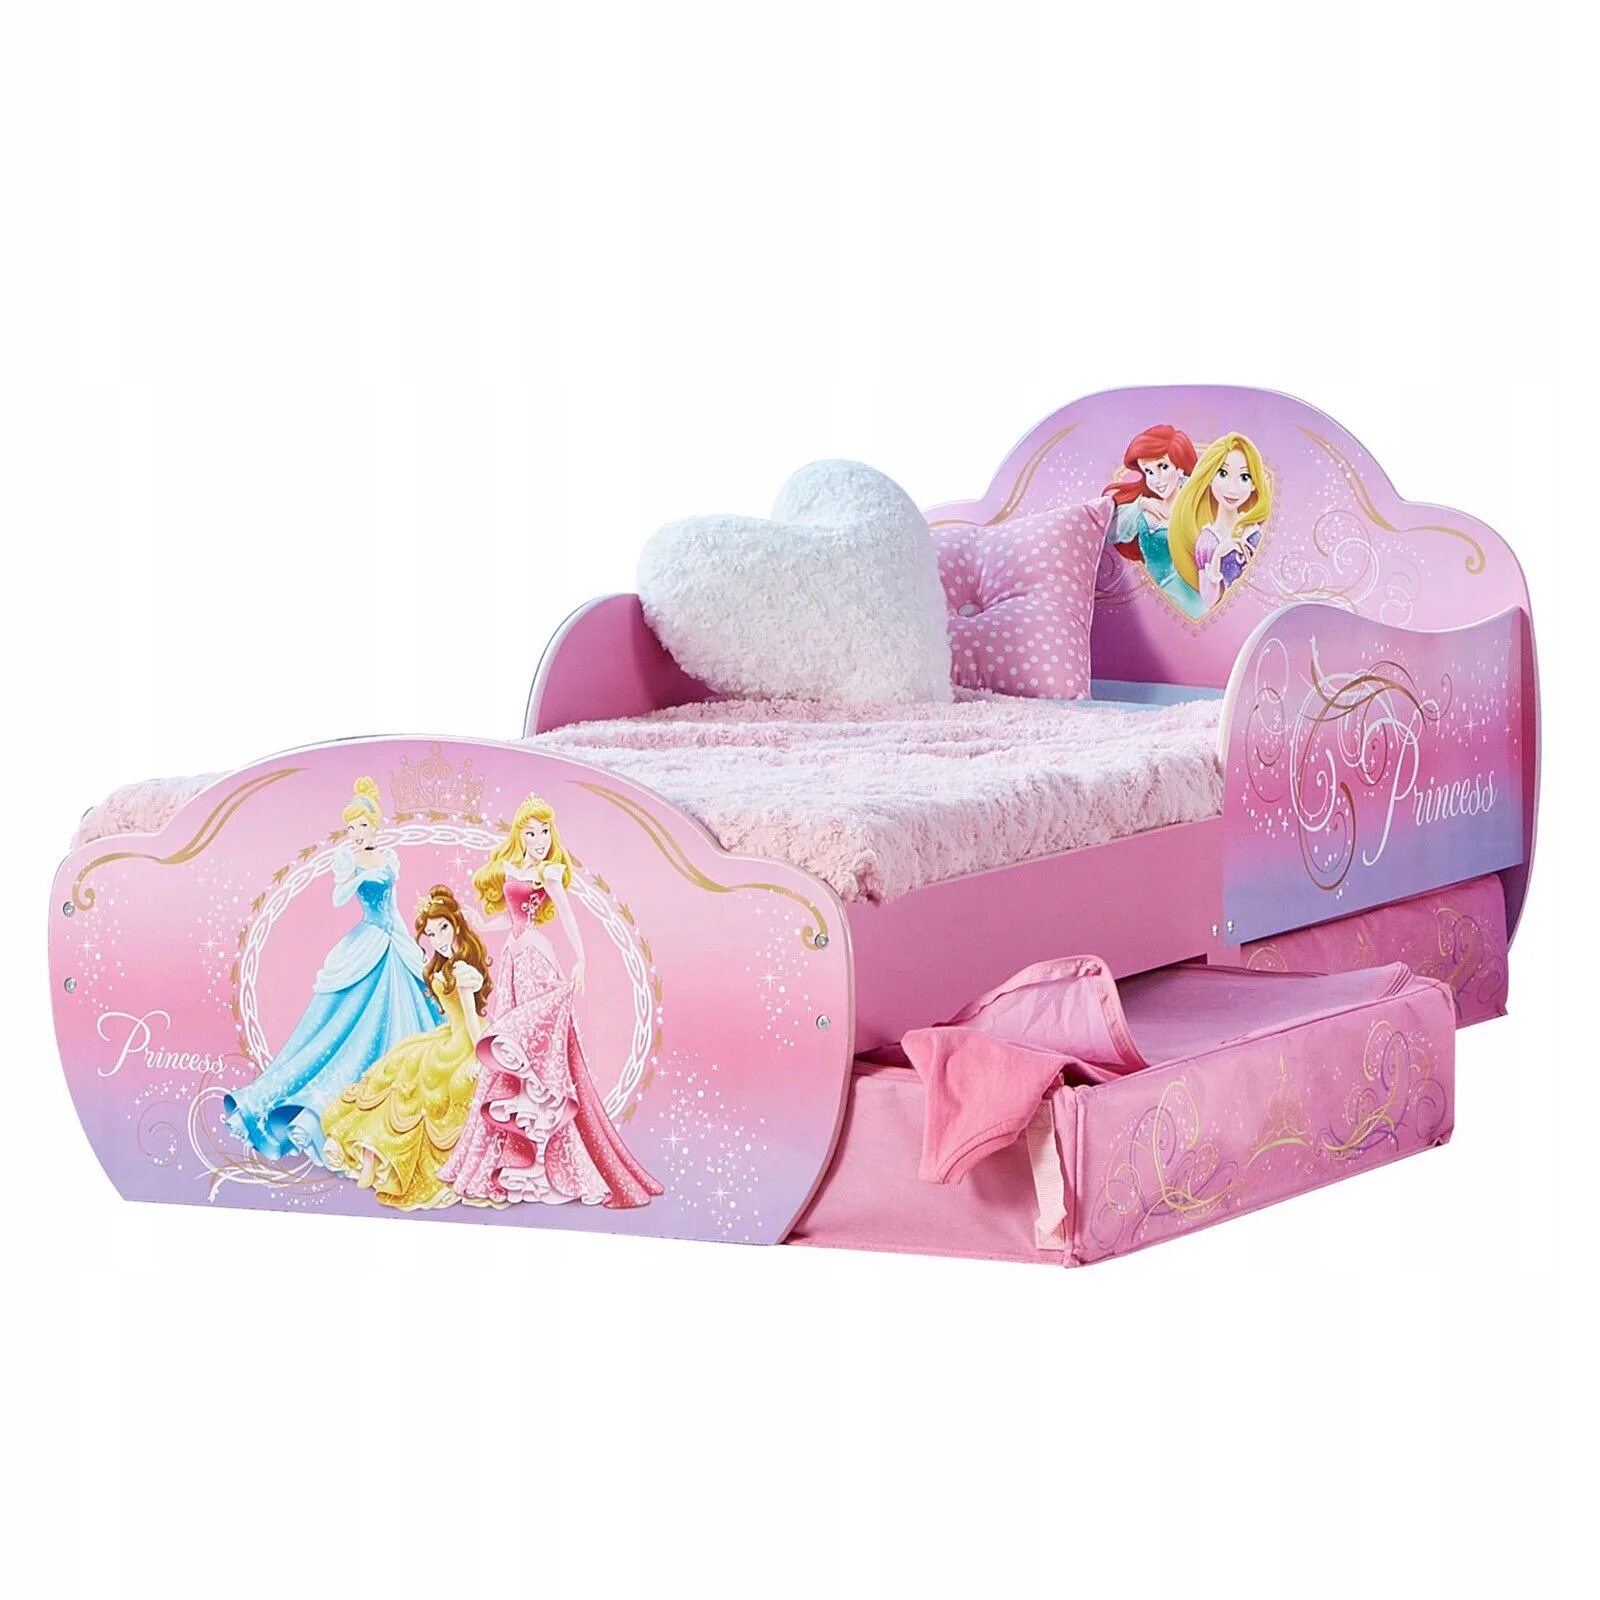 Детская принцесса. Кровать детская принцессы Disney. Кровать с принцессами Диснея. Кровать для принцессы от 3 лет. Кровать принцесса для девочки.